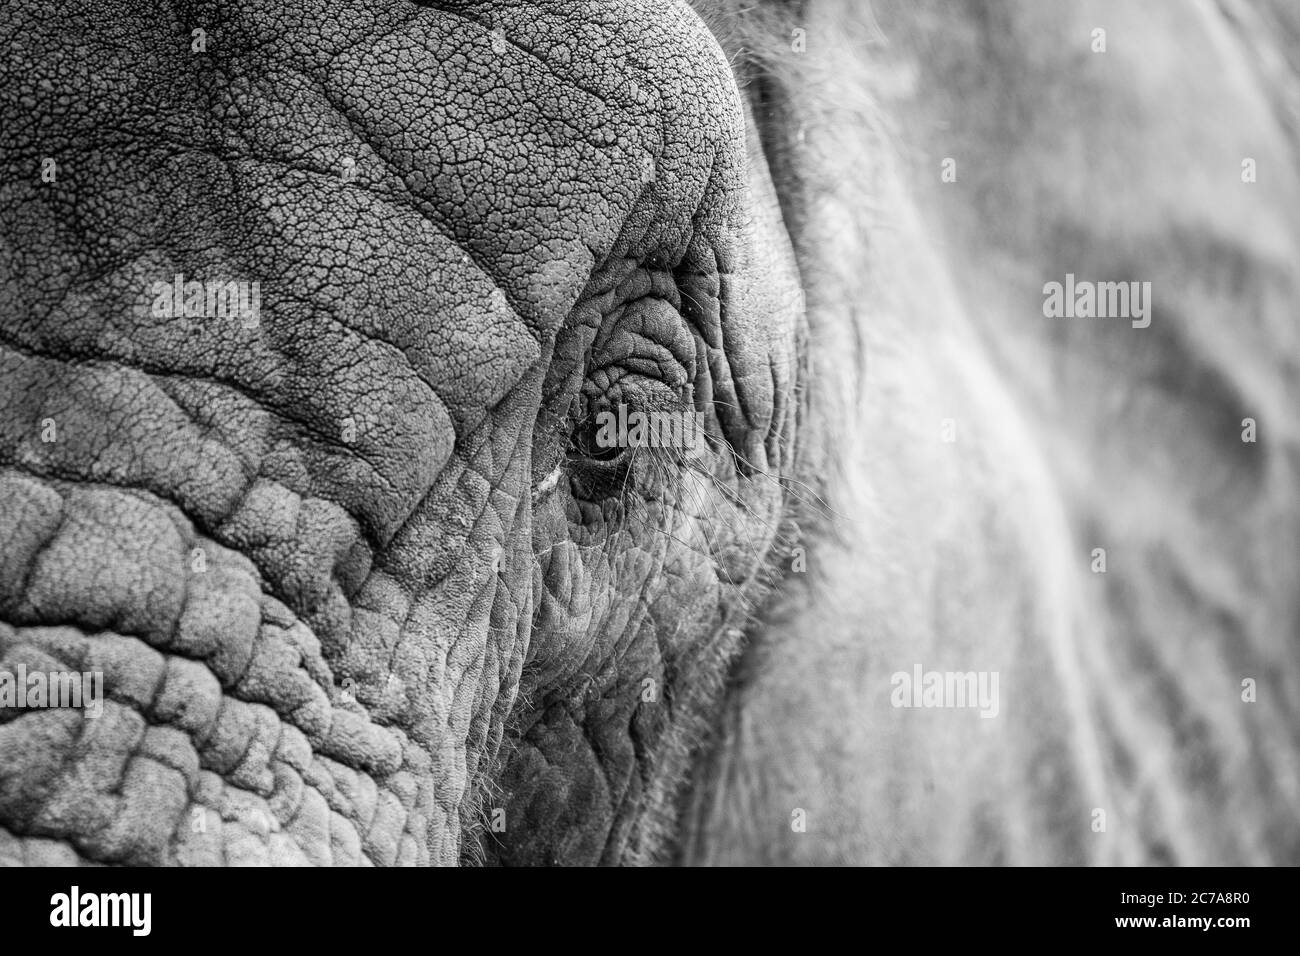 Dettaglio, monocromatico, vista della testa primo piano di un elefante africano (Loxodonta africana) isolato all'aperto al West Midland Safari Park, Regno Unito. Foto Stock